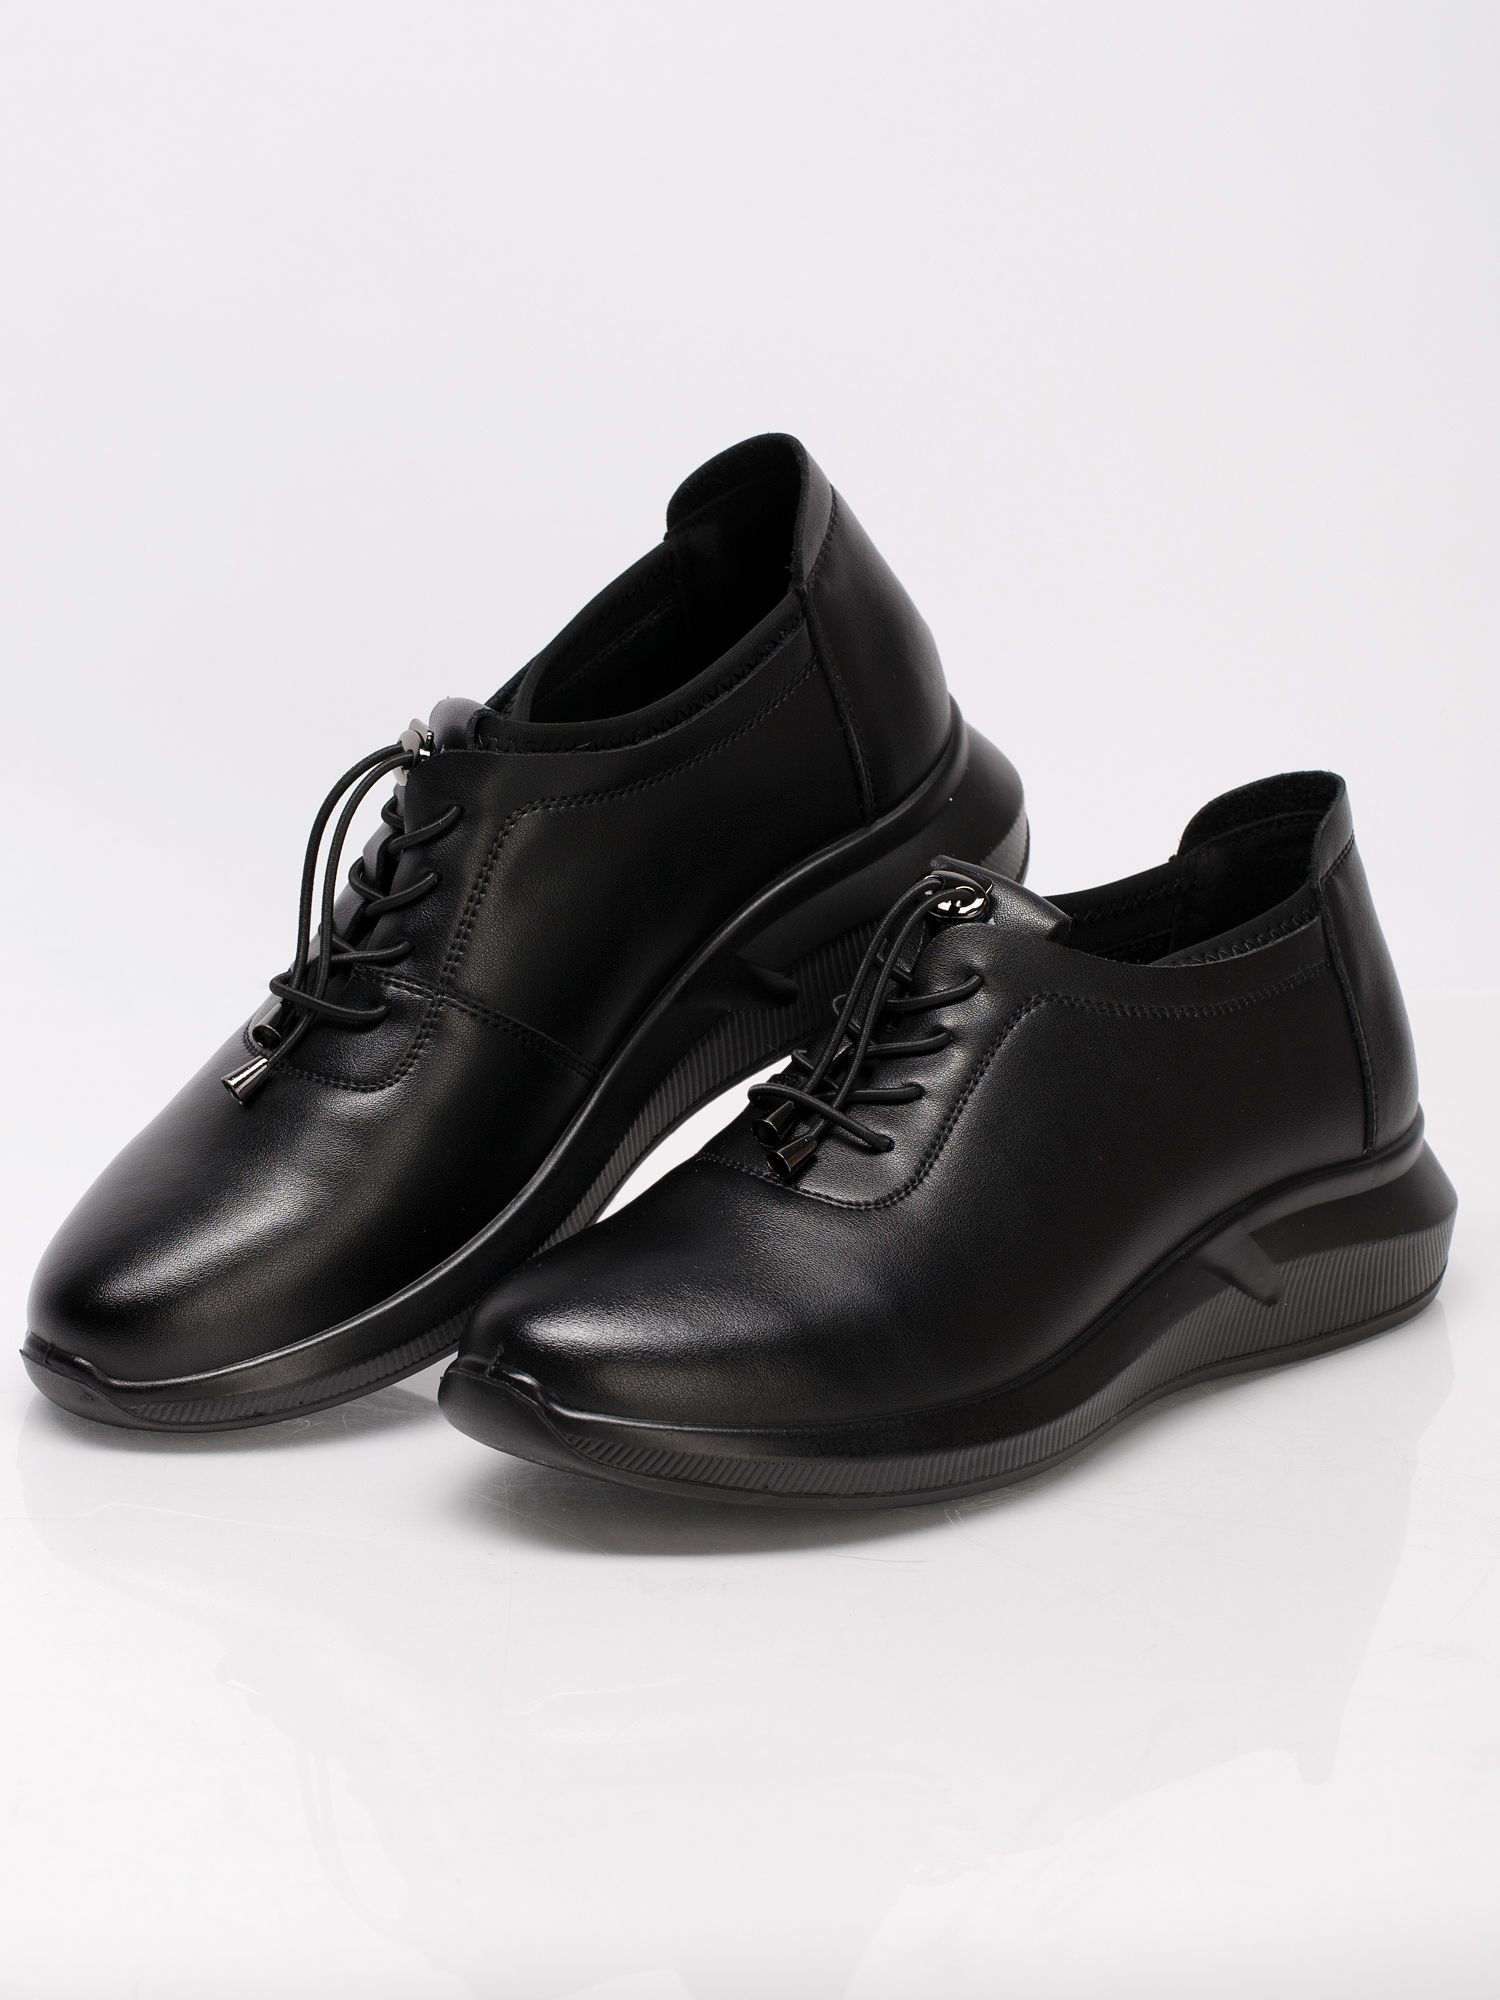 Туфли полуботинки женские осенние черные кожаные AC004-020